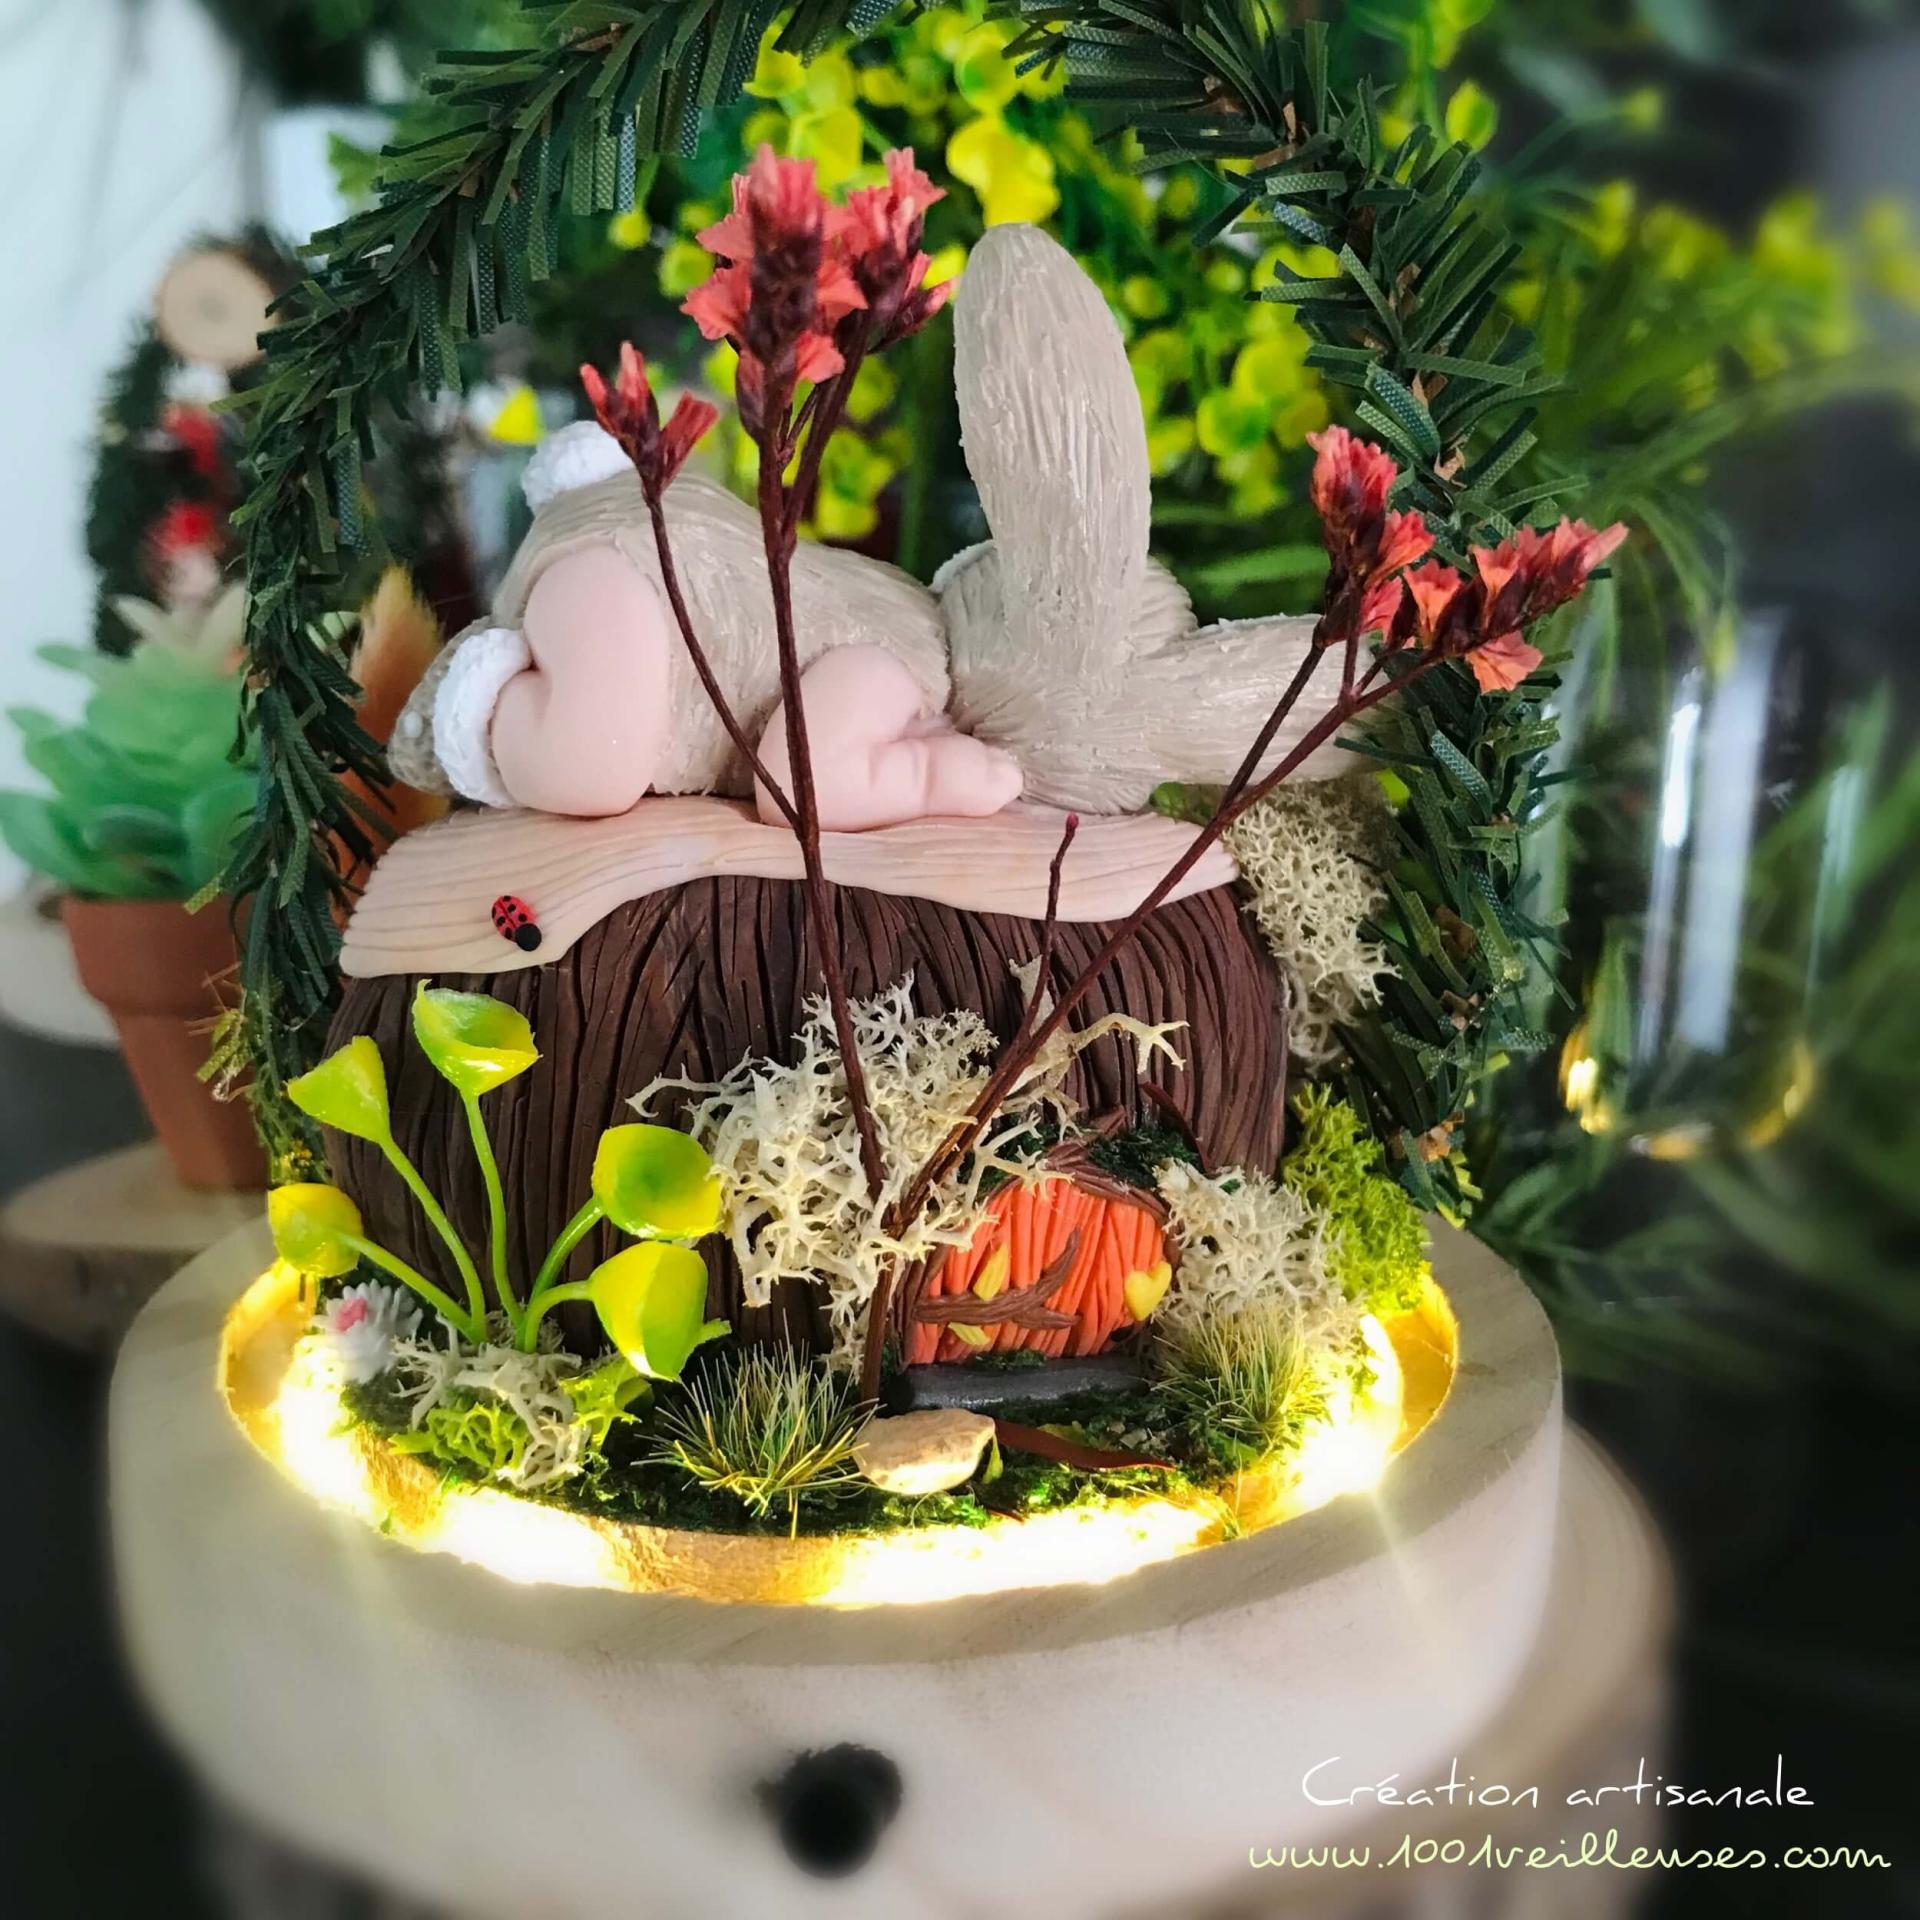 Vue rapprochée de l'arrière de la cloche enchantée, mettant en avant le jardin miniature féérique composé de fleurs séchées